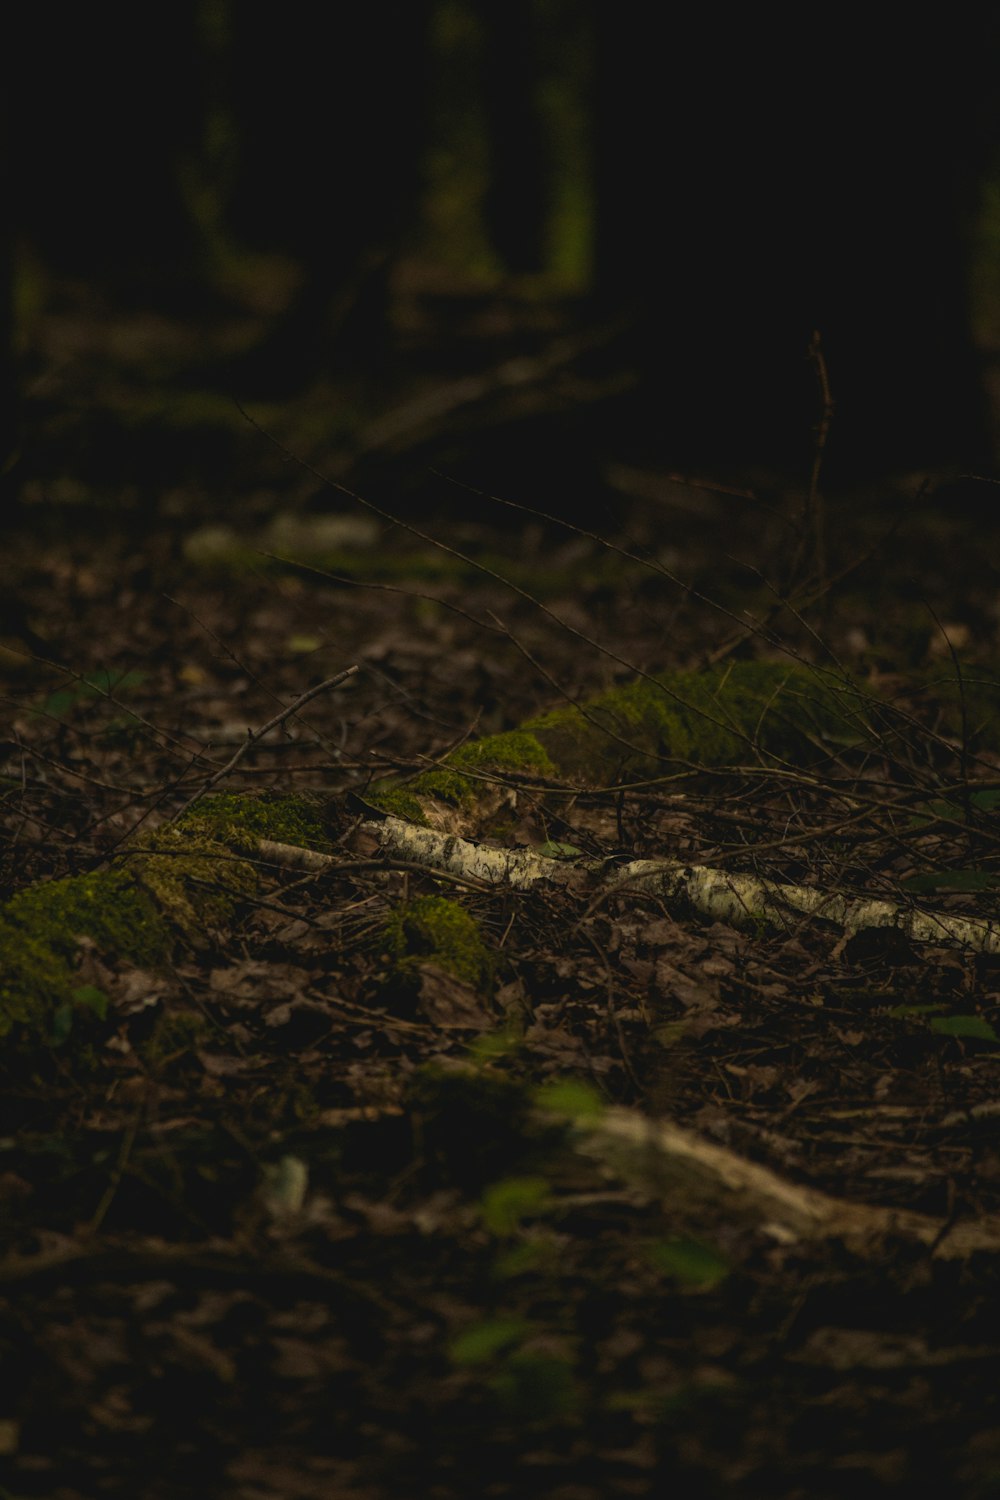 숲 속 땅에 앉아 있는 테디베어